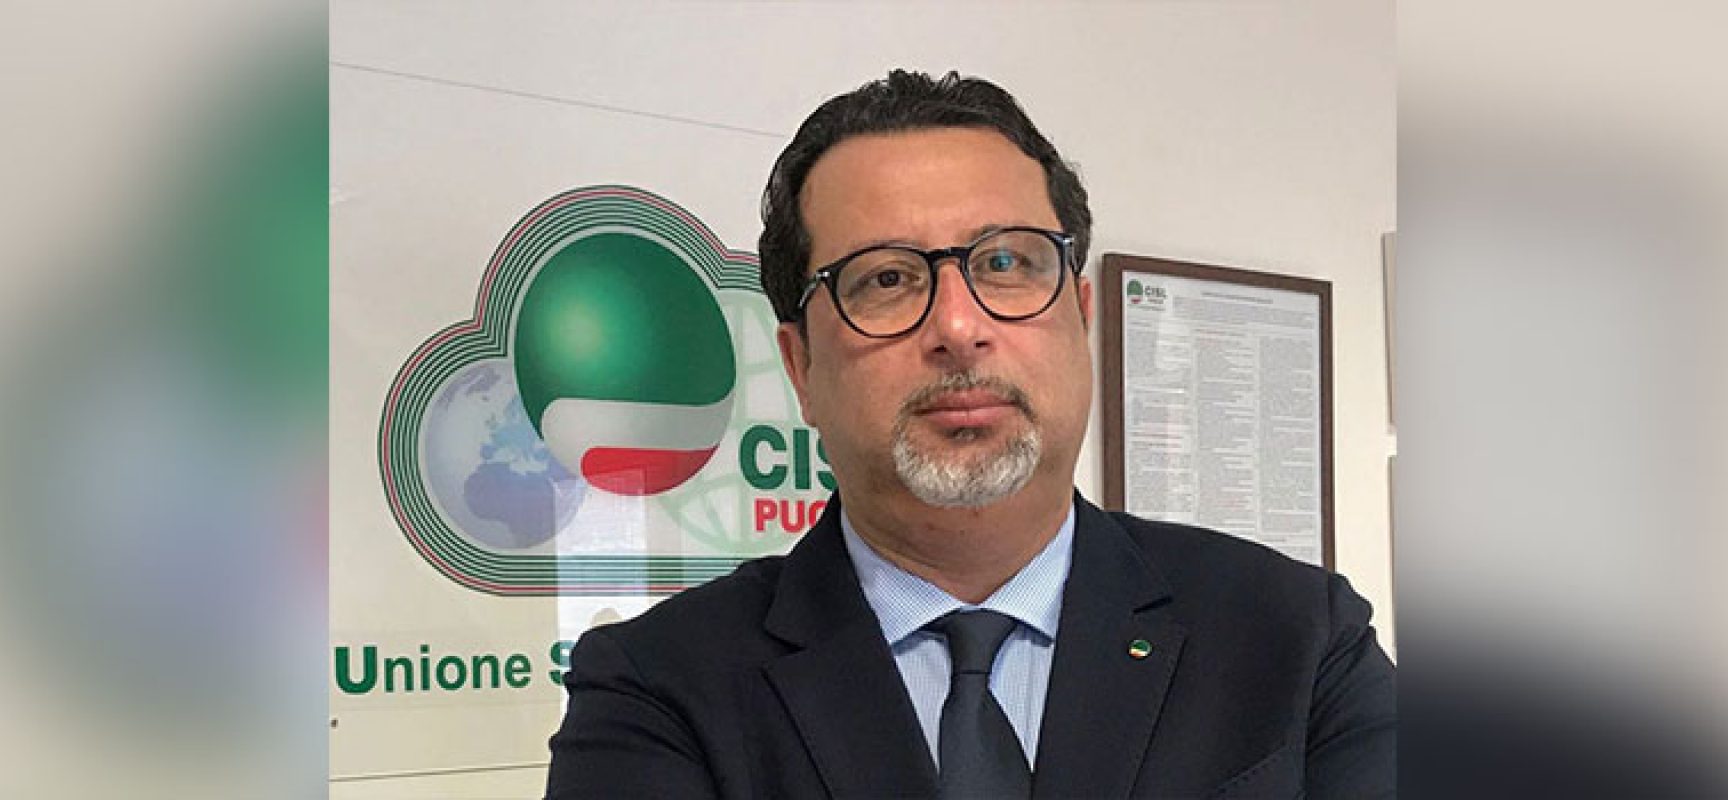 Castellucci (Cisl Puglia): “Vaccinarsi per tutelare salute e consolidare ripresa economica”